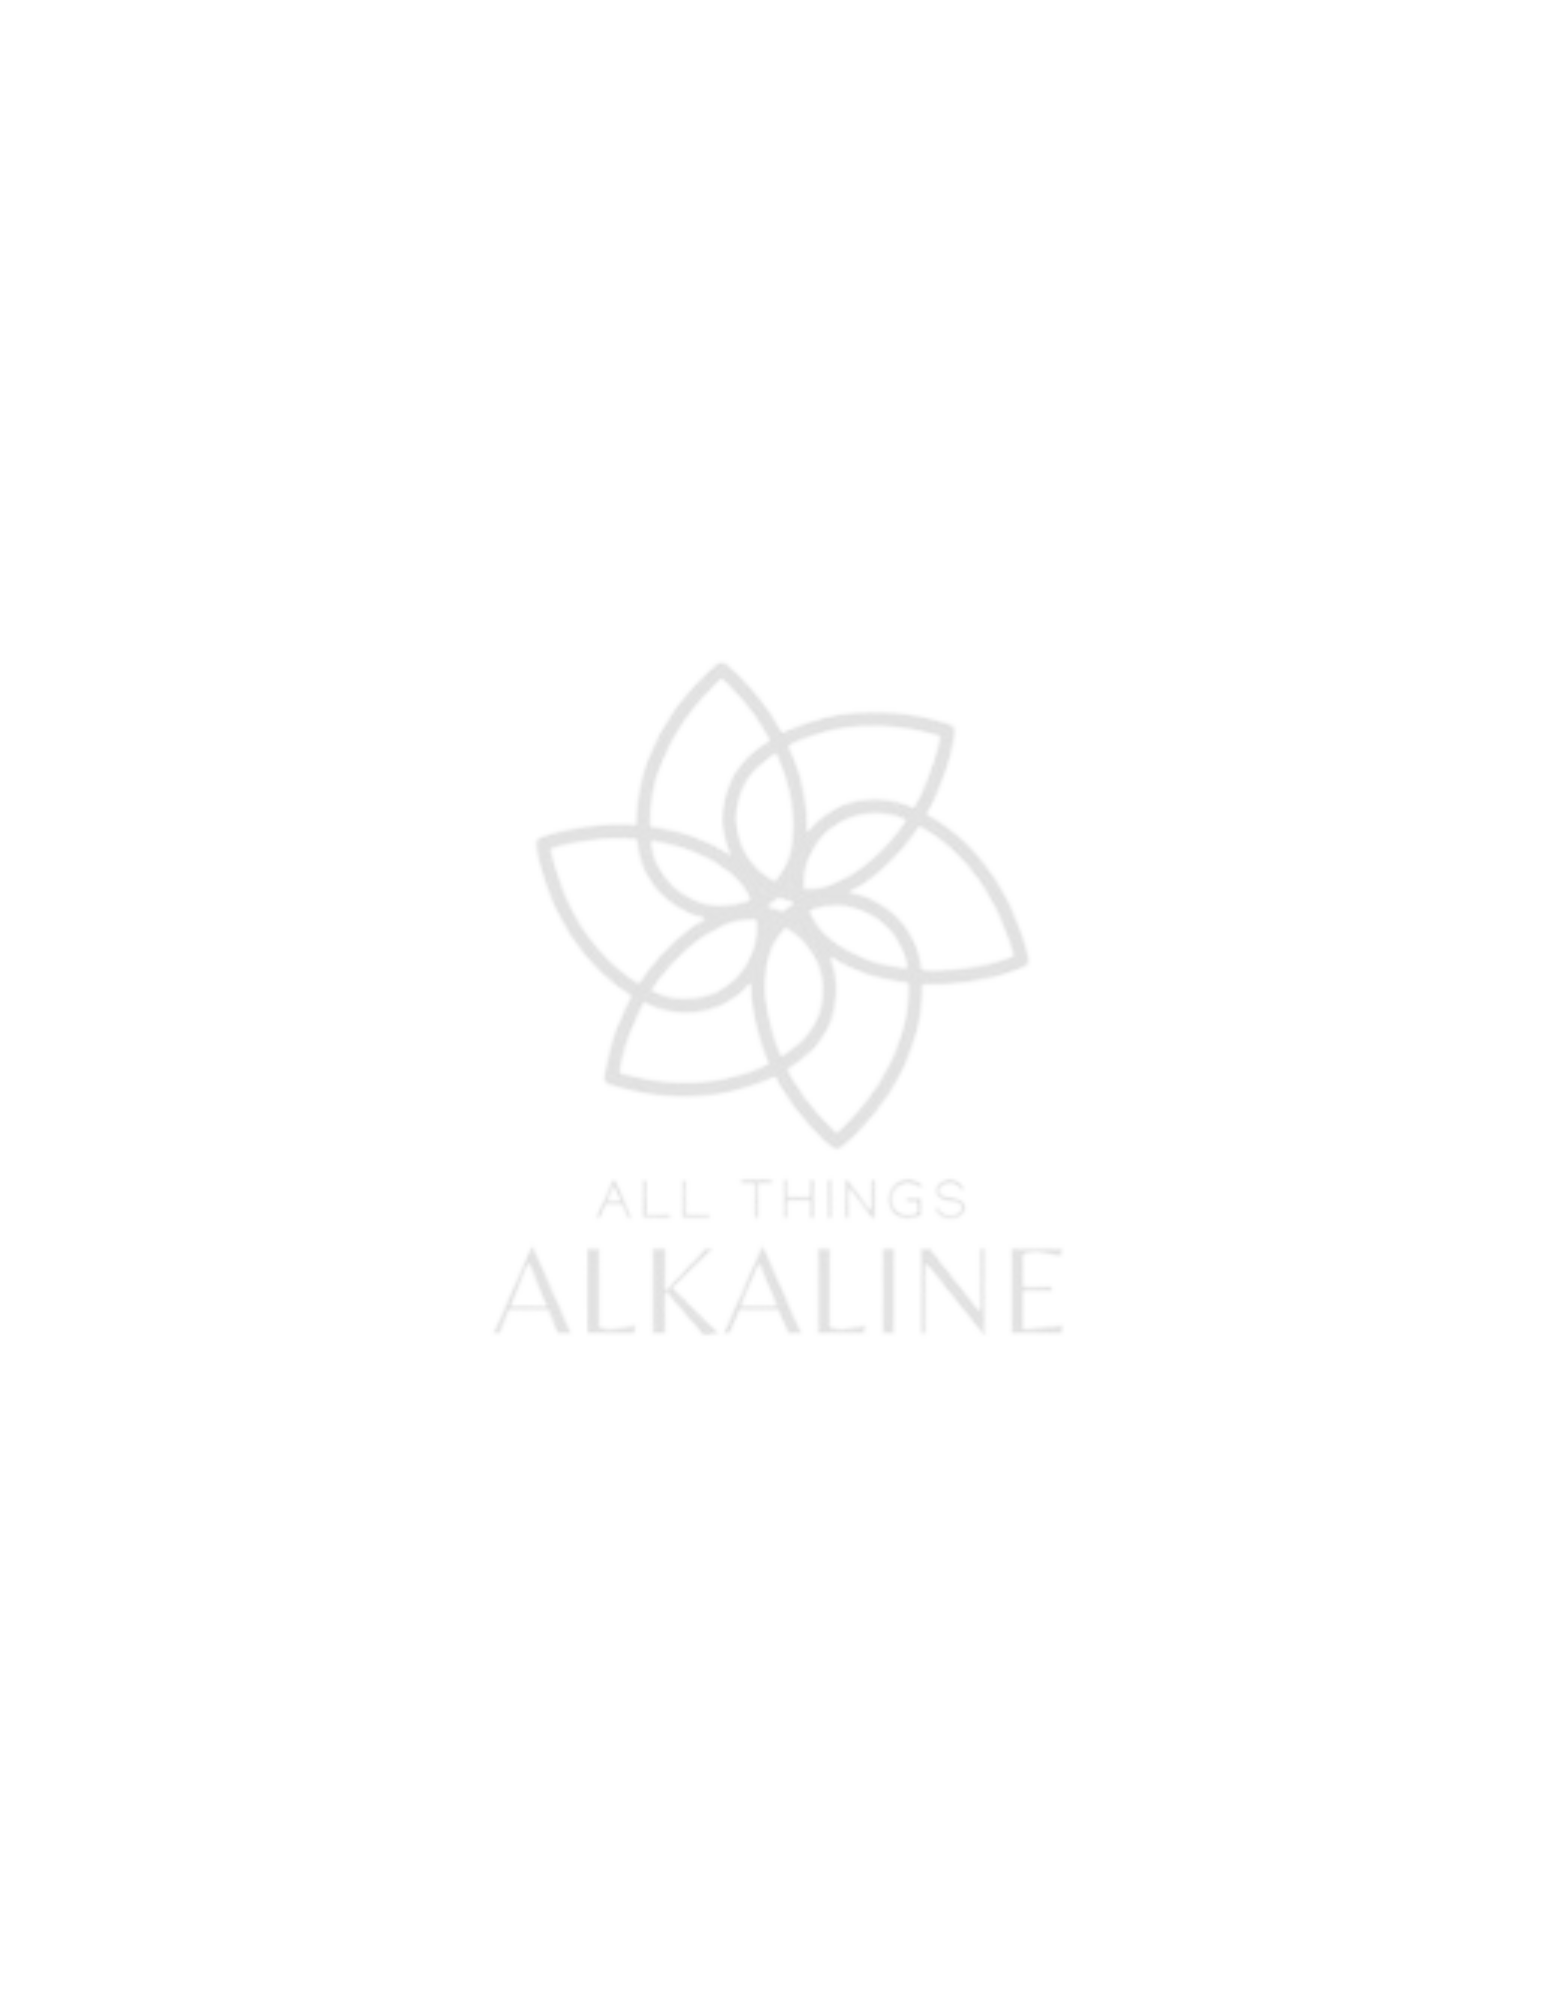 All Things Alkaline